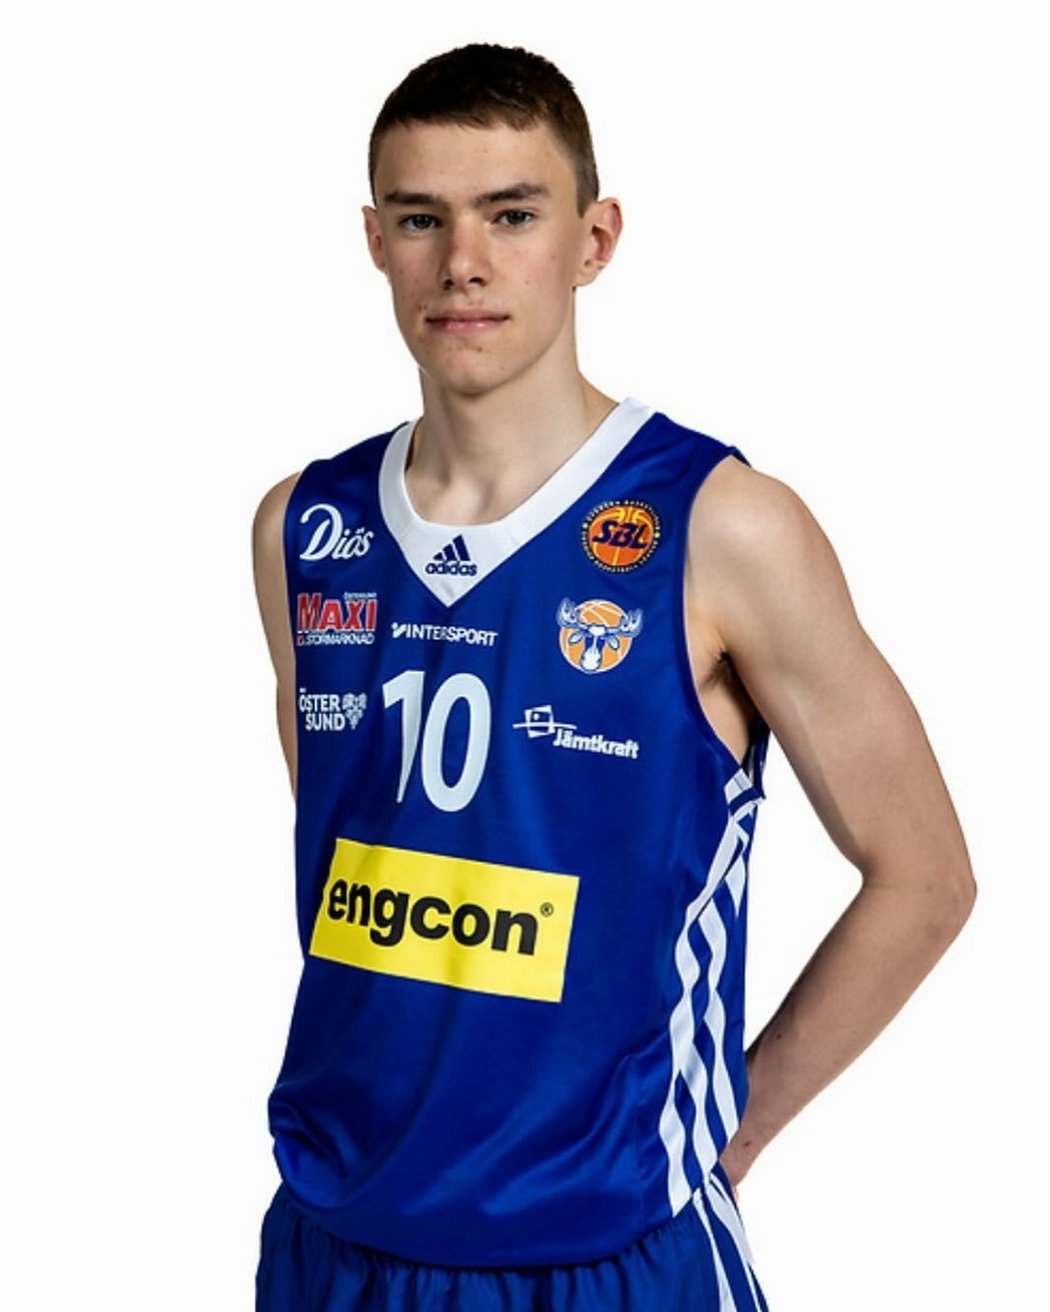 Basketbalový reprezentant Gustav Vagström (†17) podlehl zákeřné nemoci